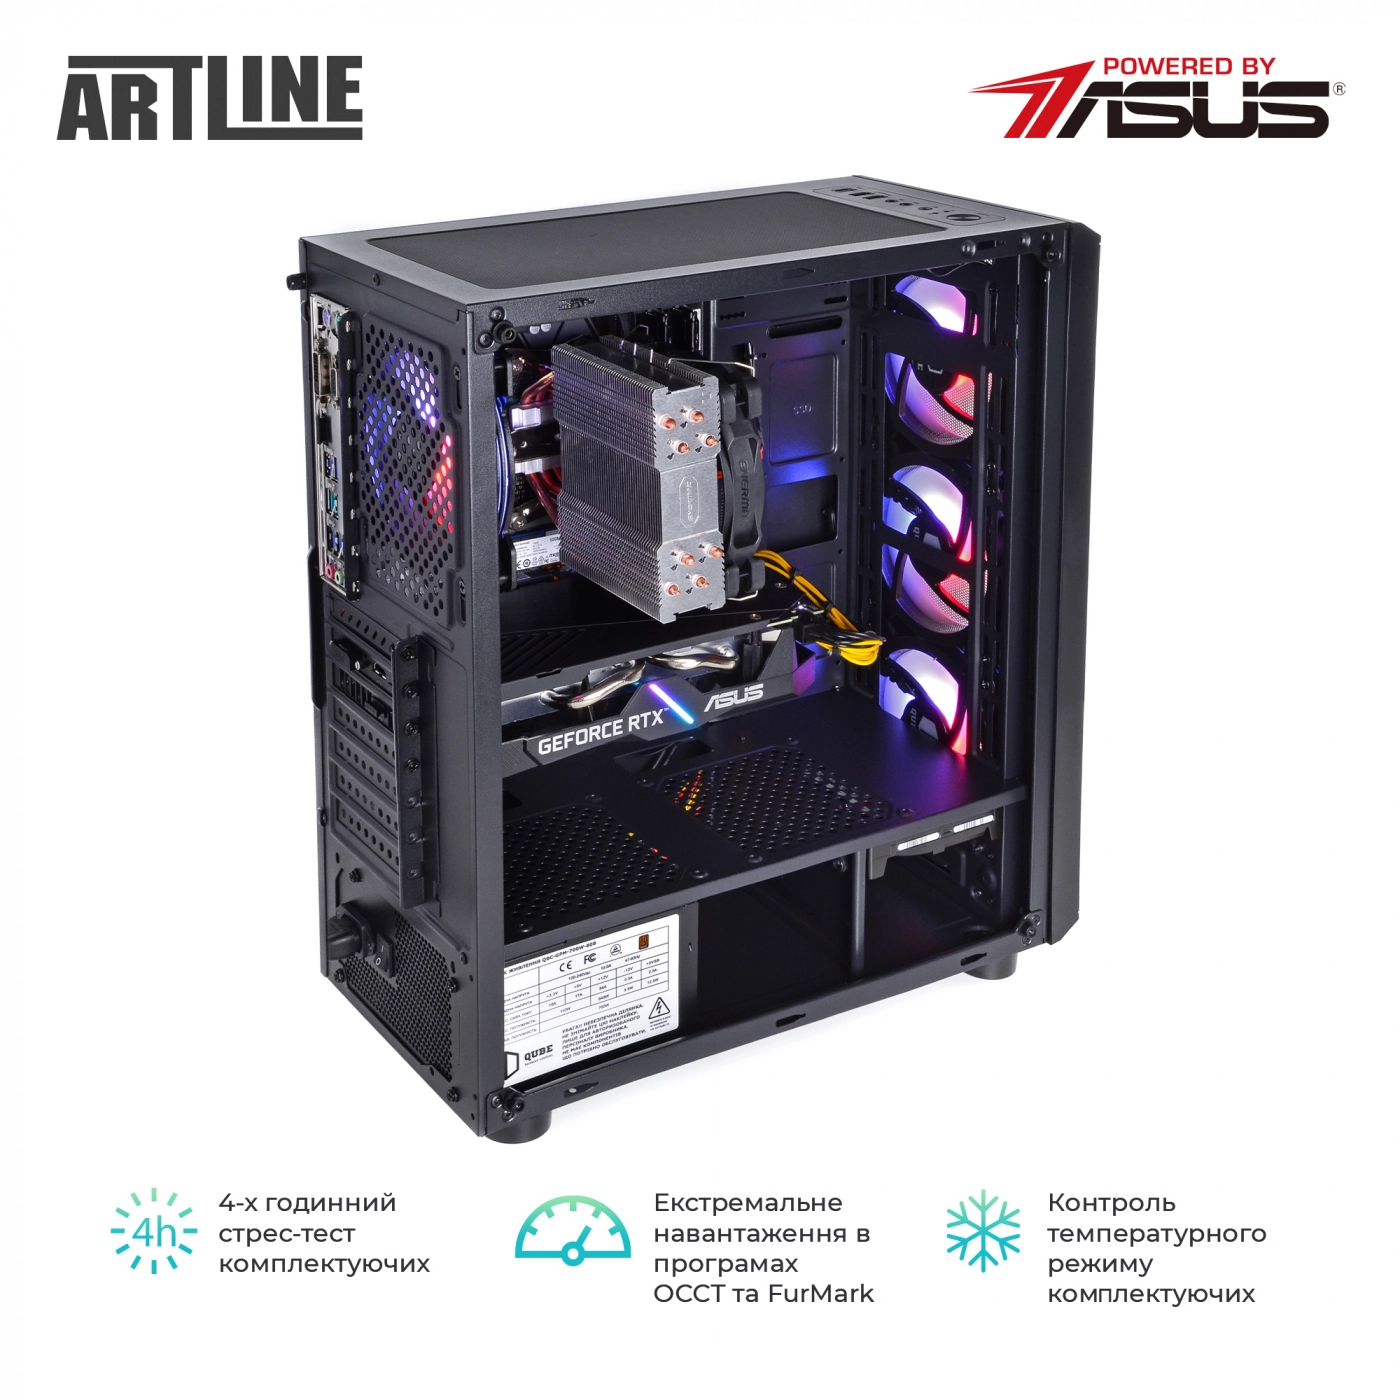 Купить Компьютер ARTLINE Gaming X63v20 - фото 6